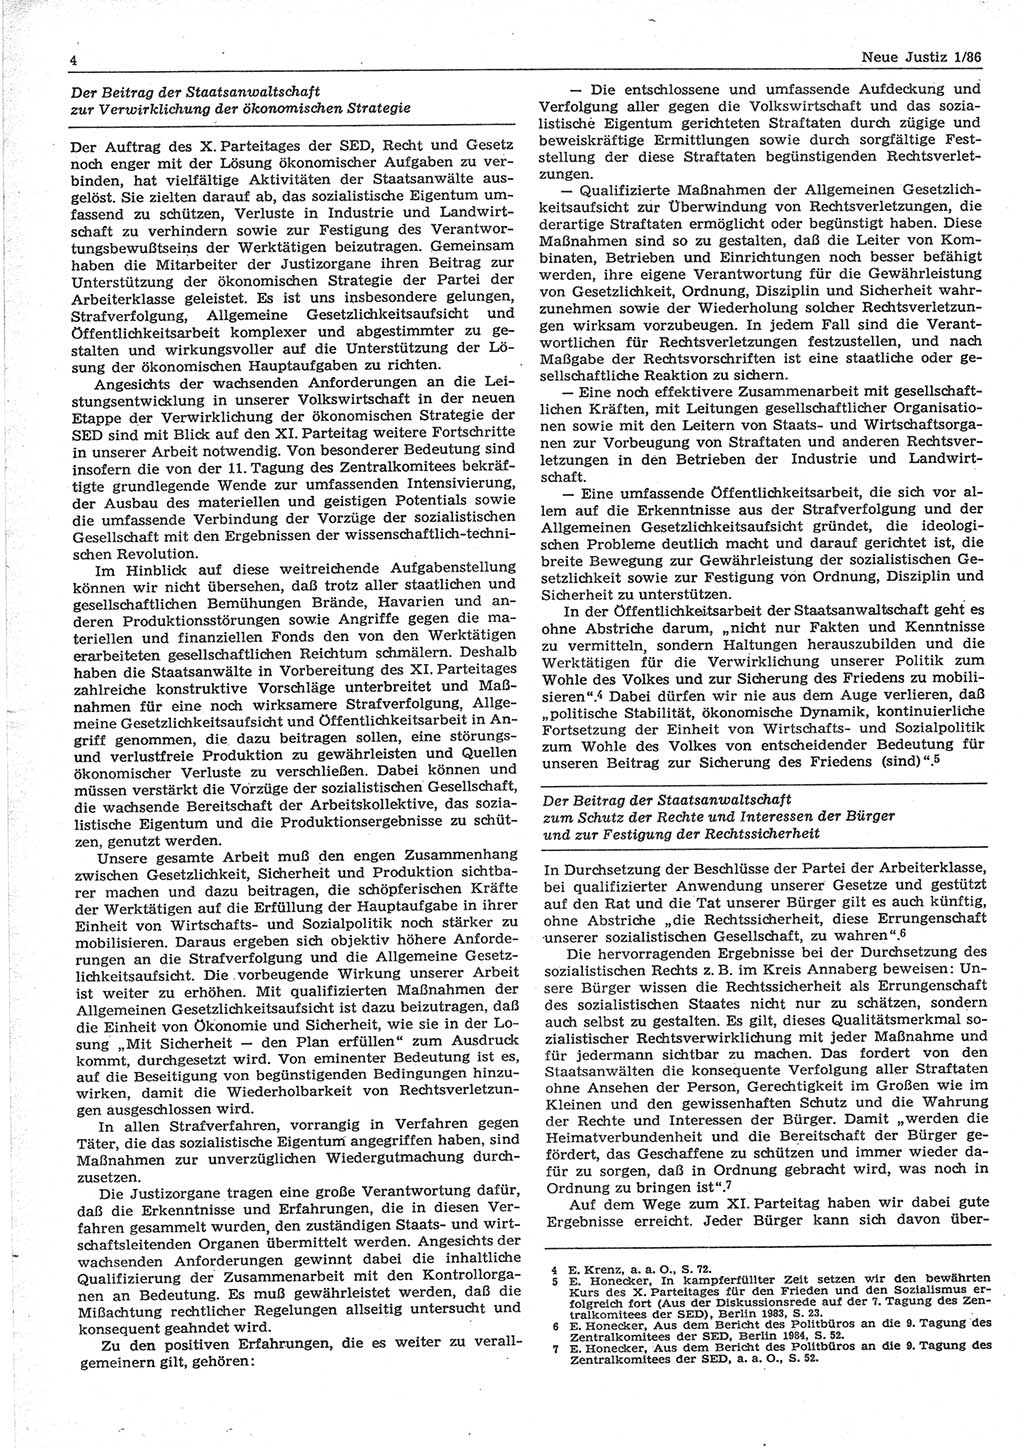 Neue Justiz (NJ), Zeitschrift für sozialistisches Recht und Gesetzlichkeit [Deutsche Demokratische Republik (DDR)], 40. Jahrgang 1986, Seite 4 (NJ DDR 1986, S. 4)